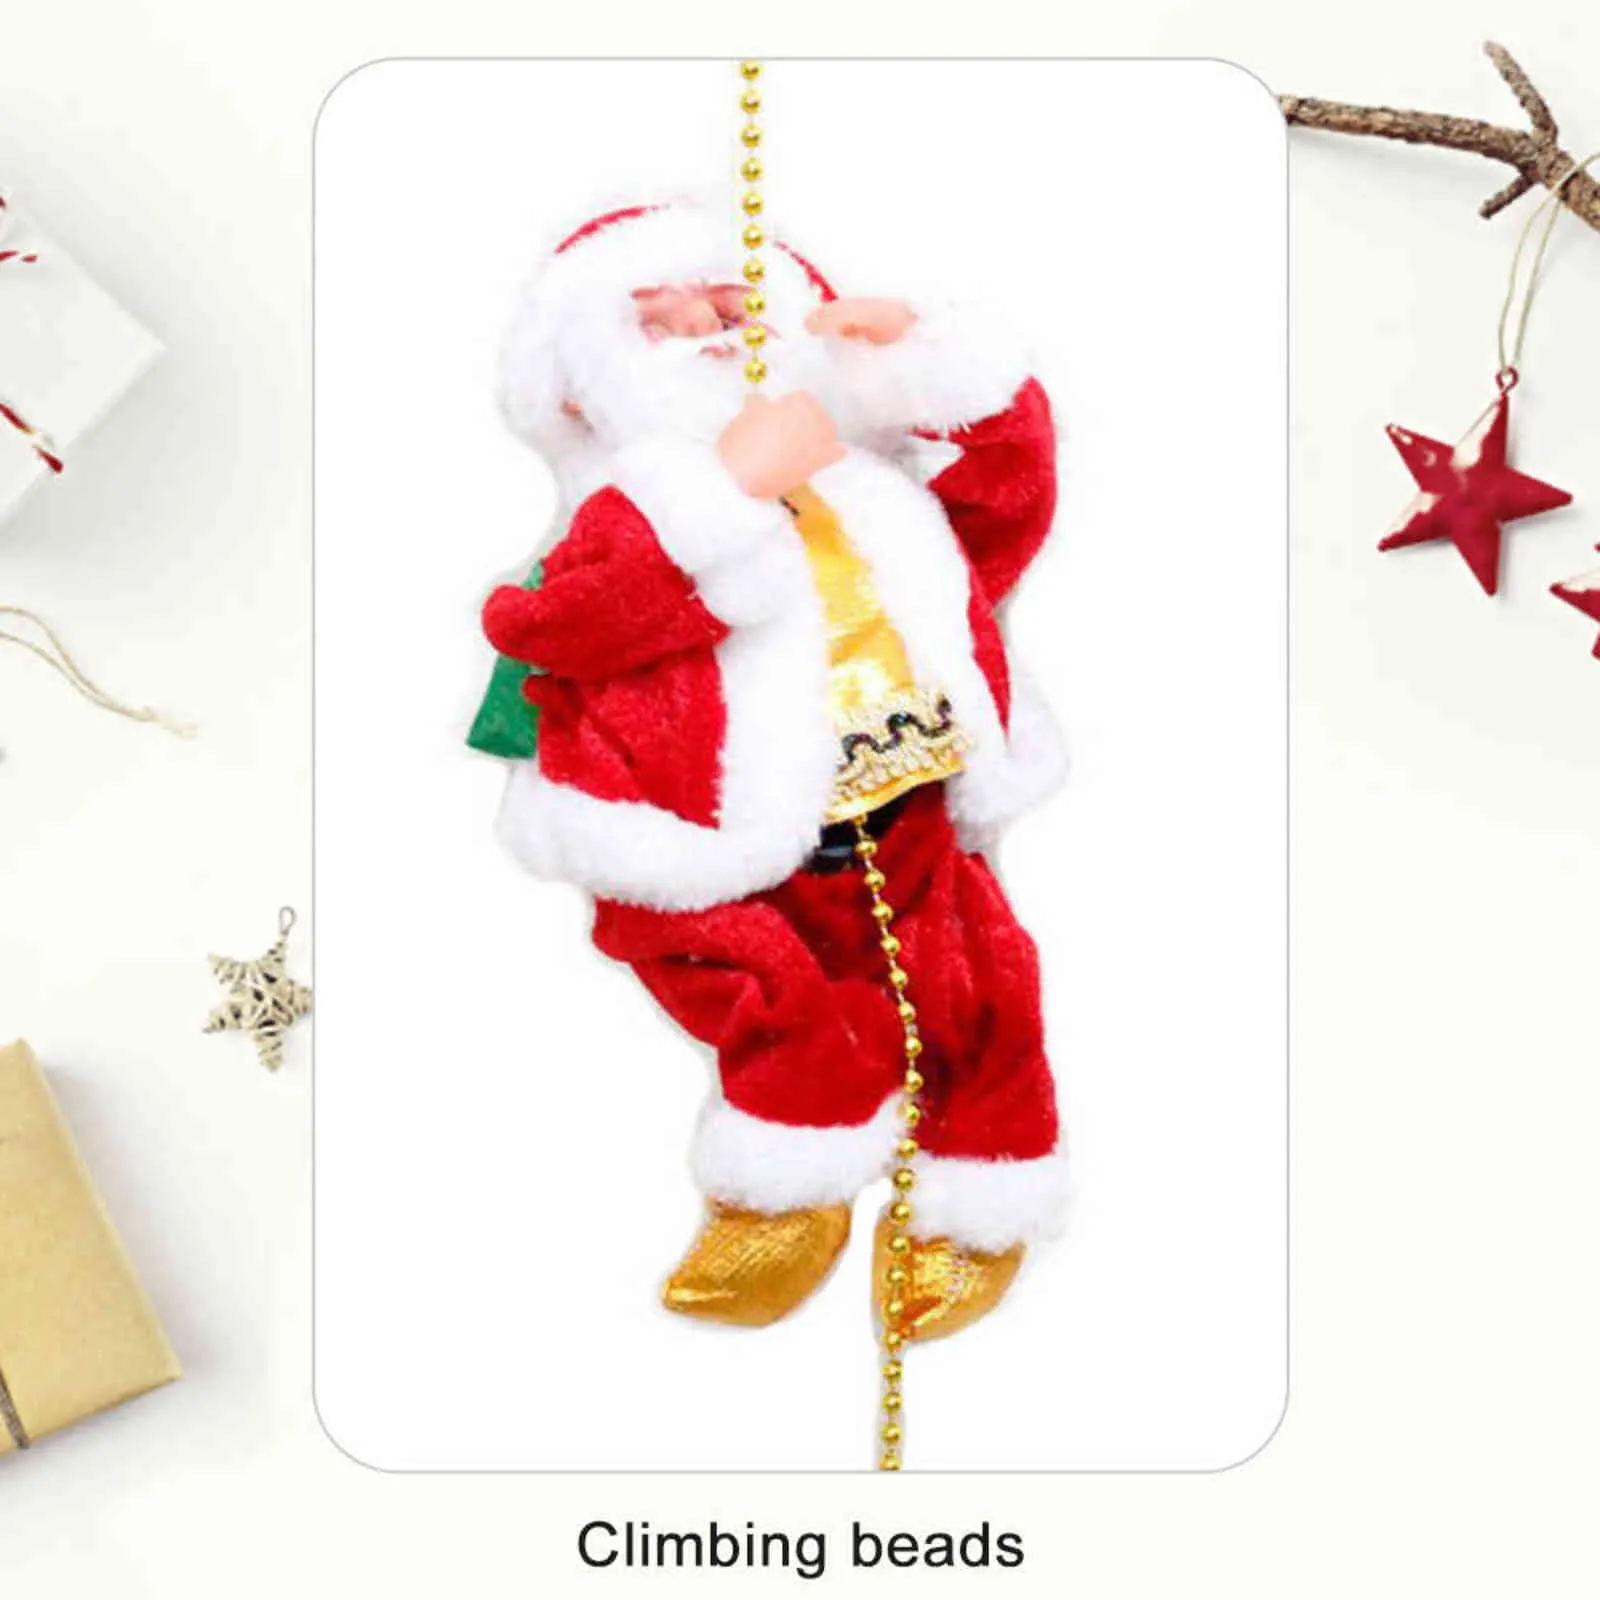 Noel Baba Tırmanma Boncuklar Pil İşletilmiş Elektrikli Tırmanış Yukarı ve Aşağı Işık ve Müzik ile Noel Baba Noel Dekorasyonu 21286H